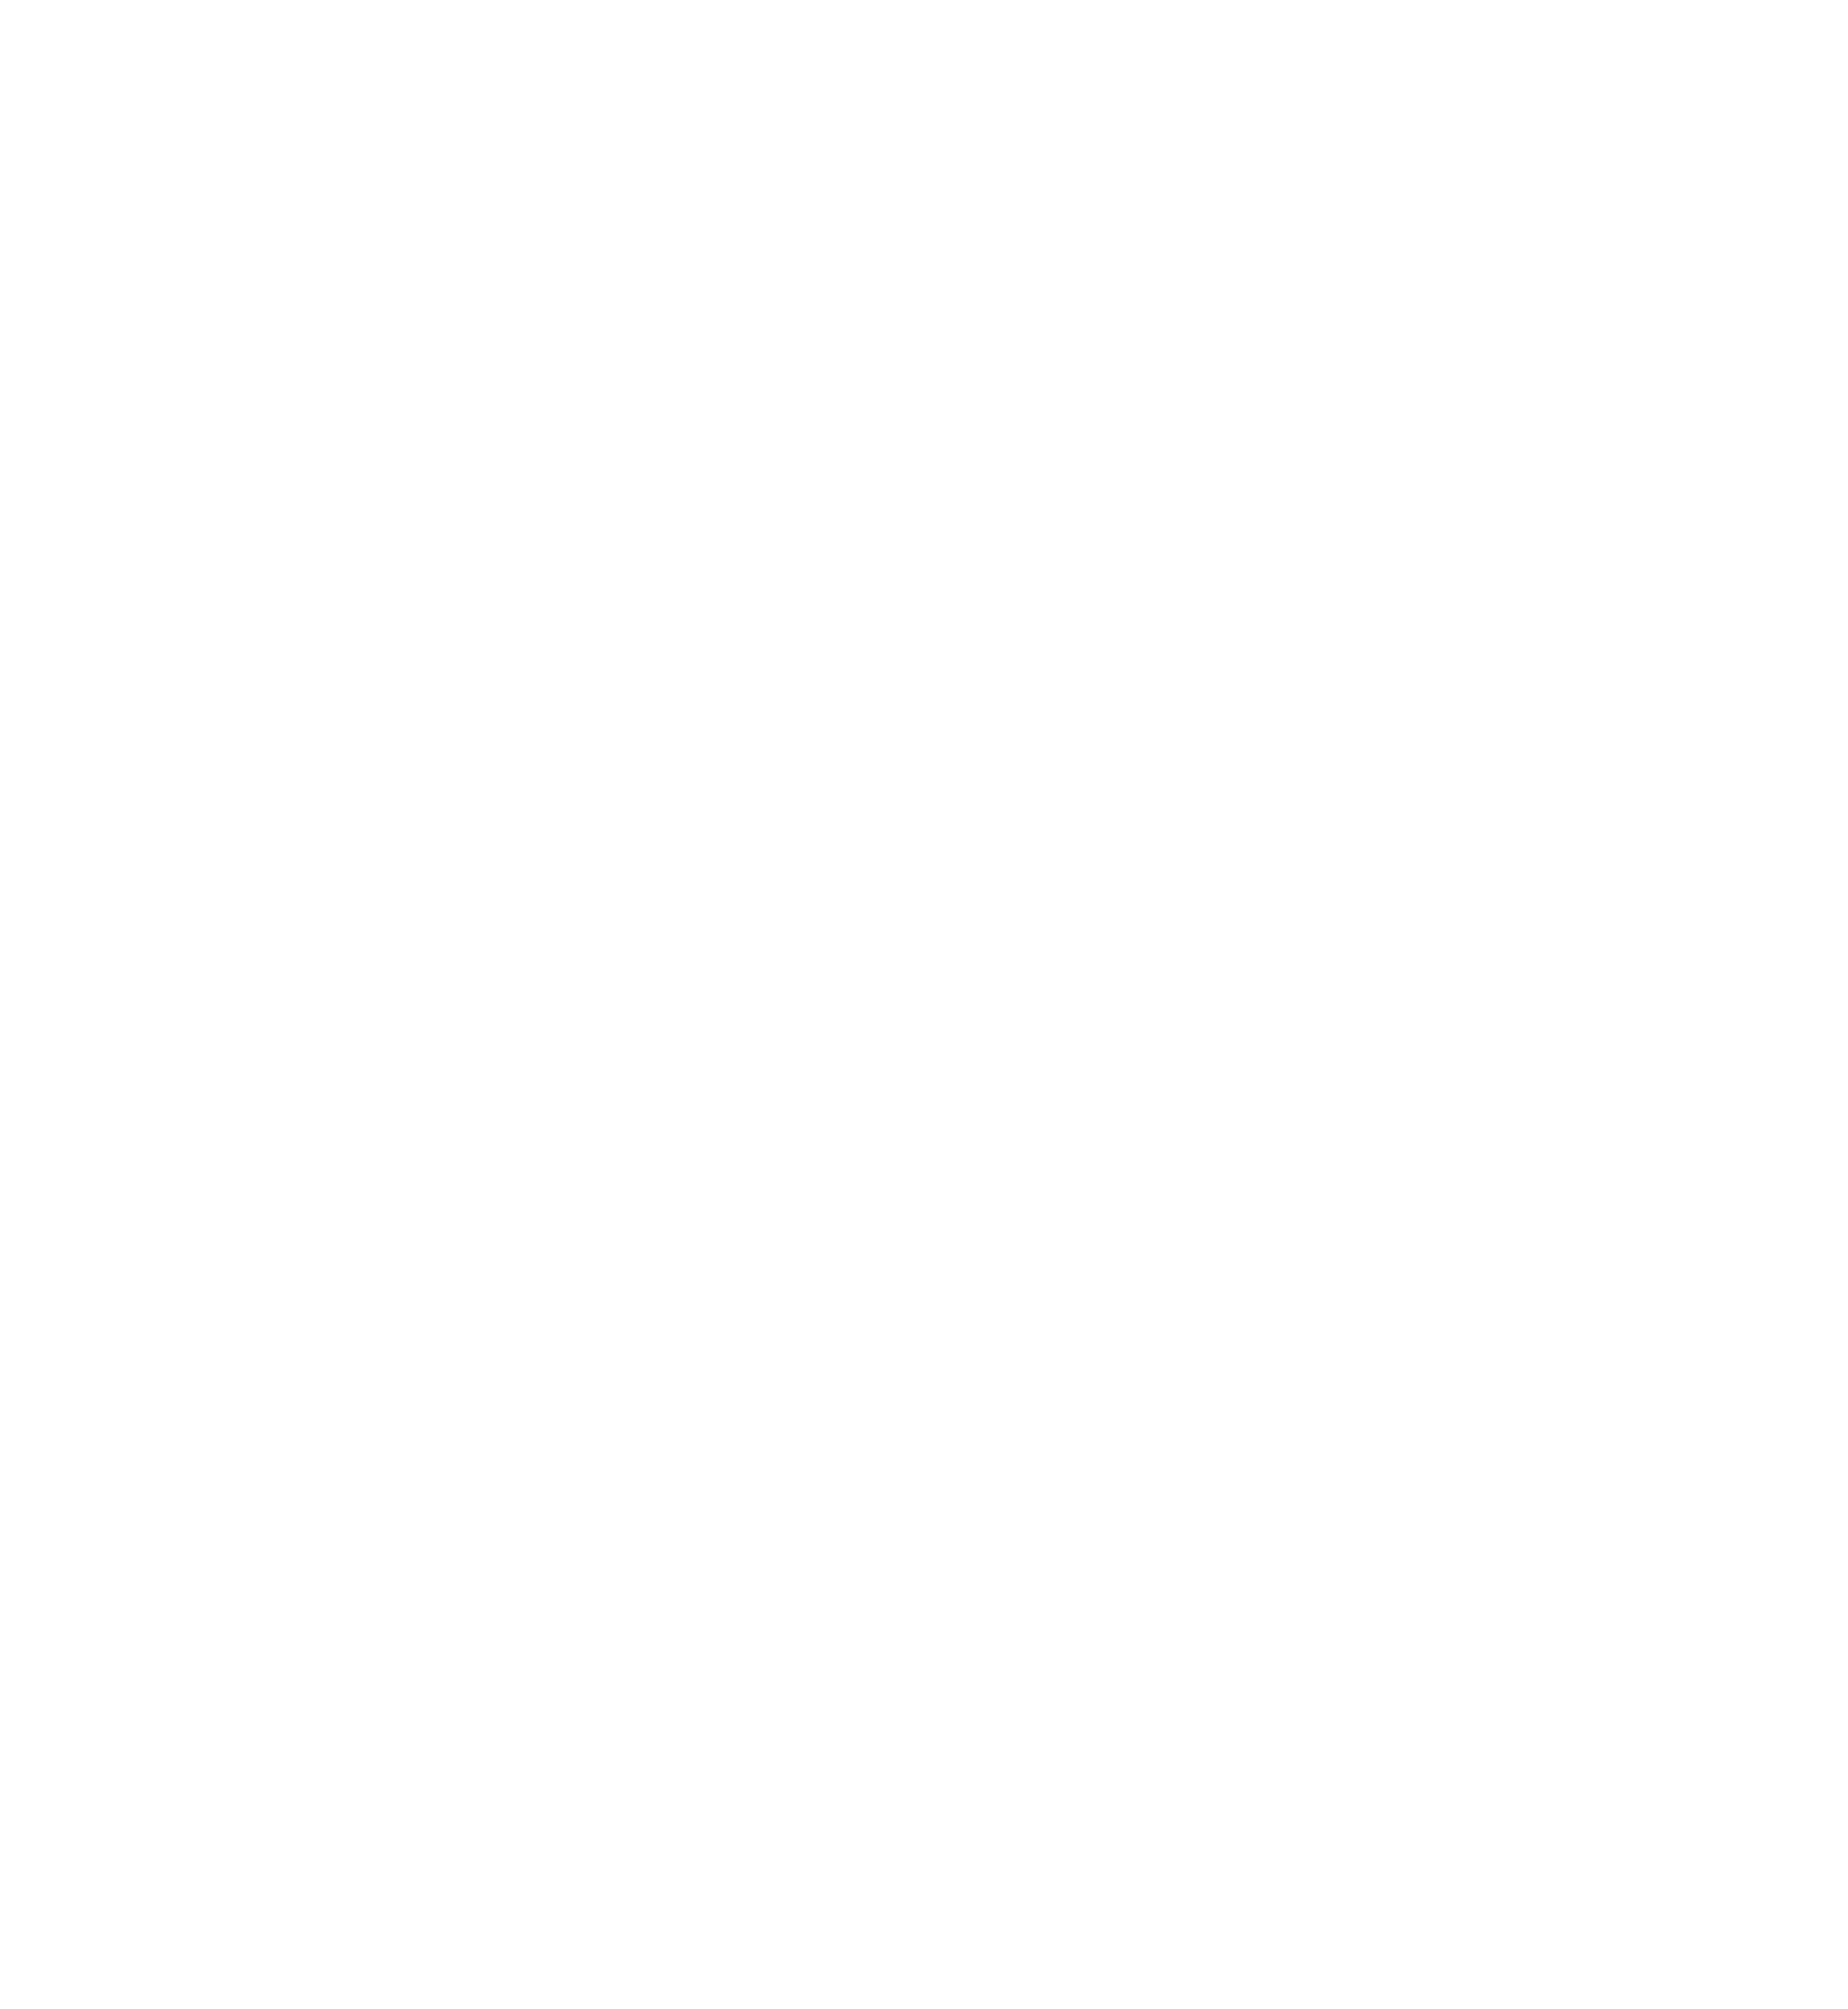 UNCDF logo